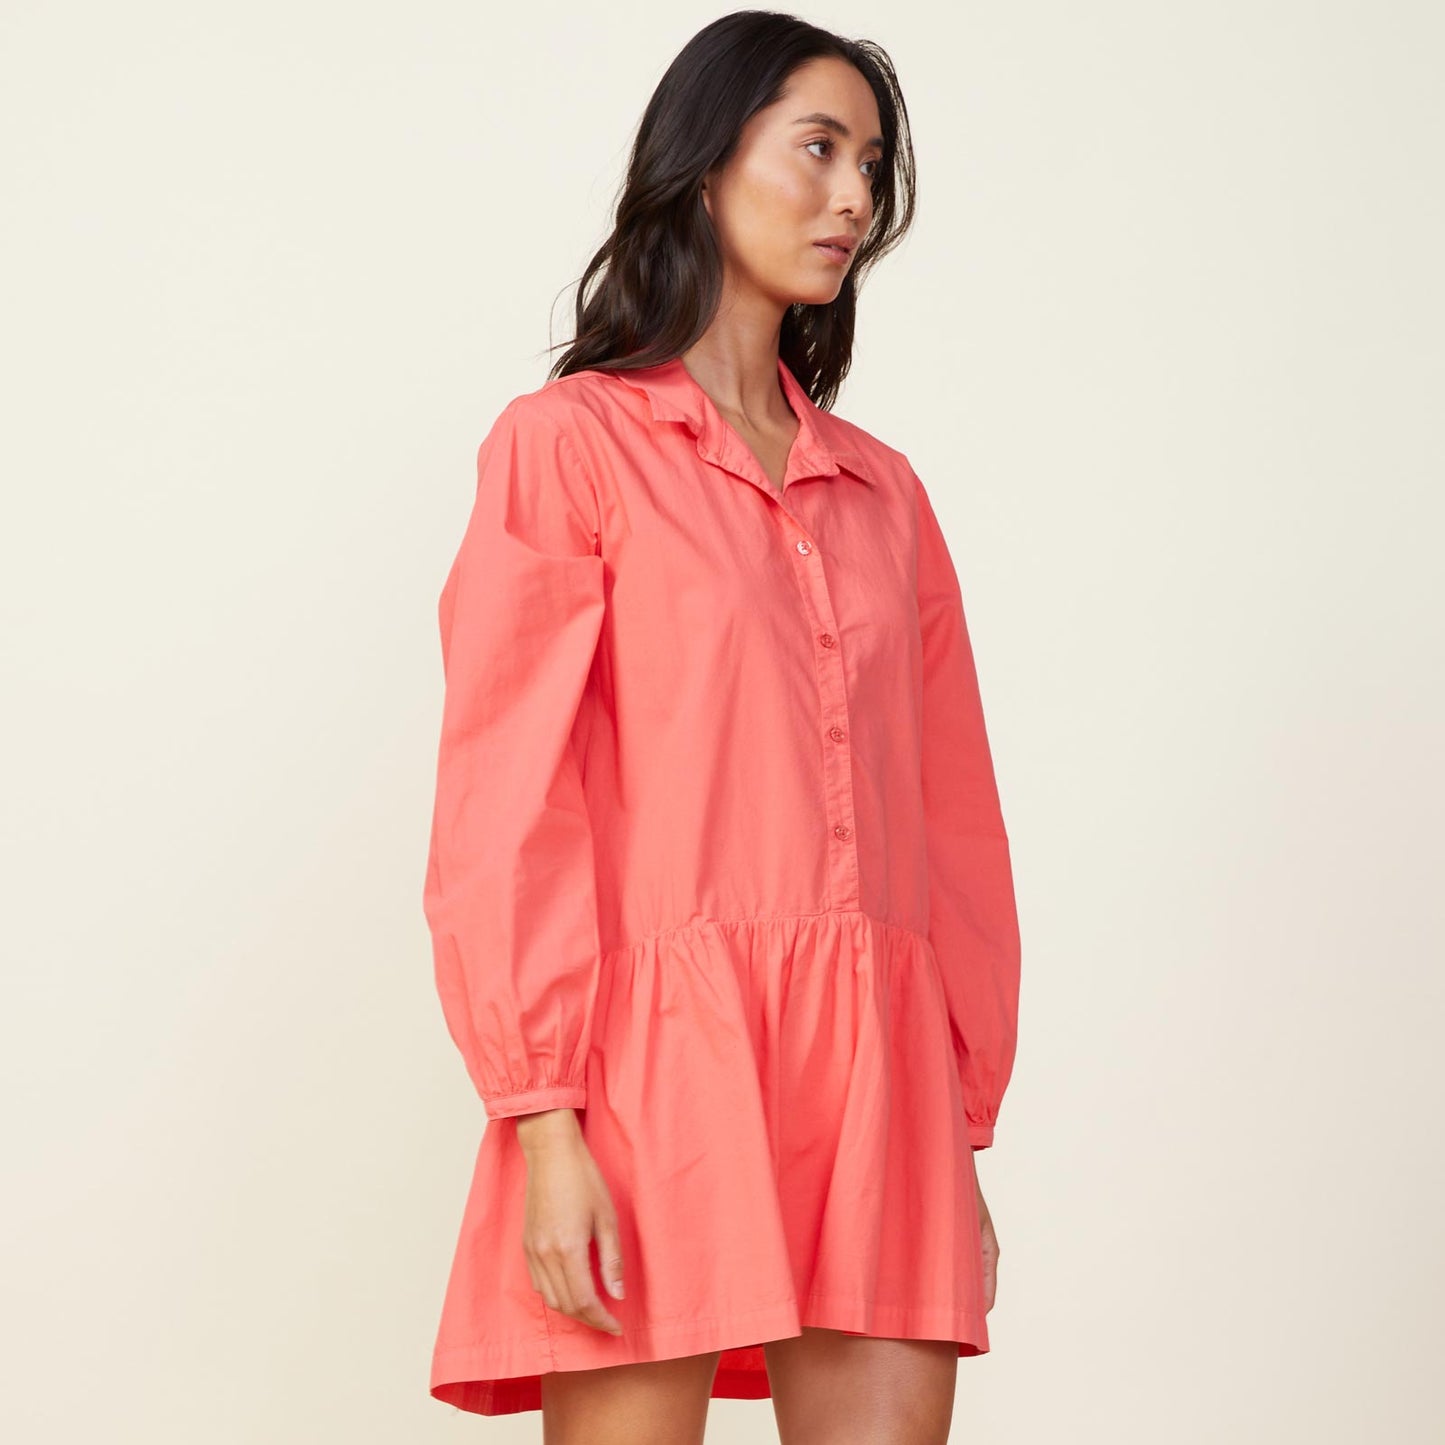 Side view of model wearing the poplin easy shirt dress in watermelon.